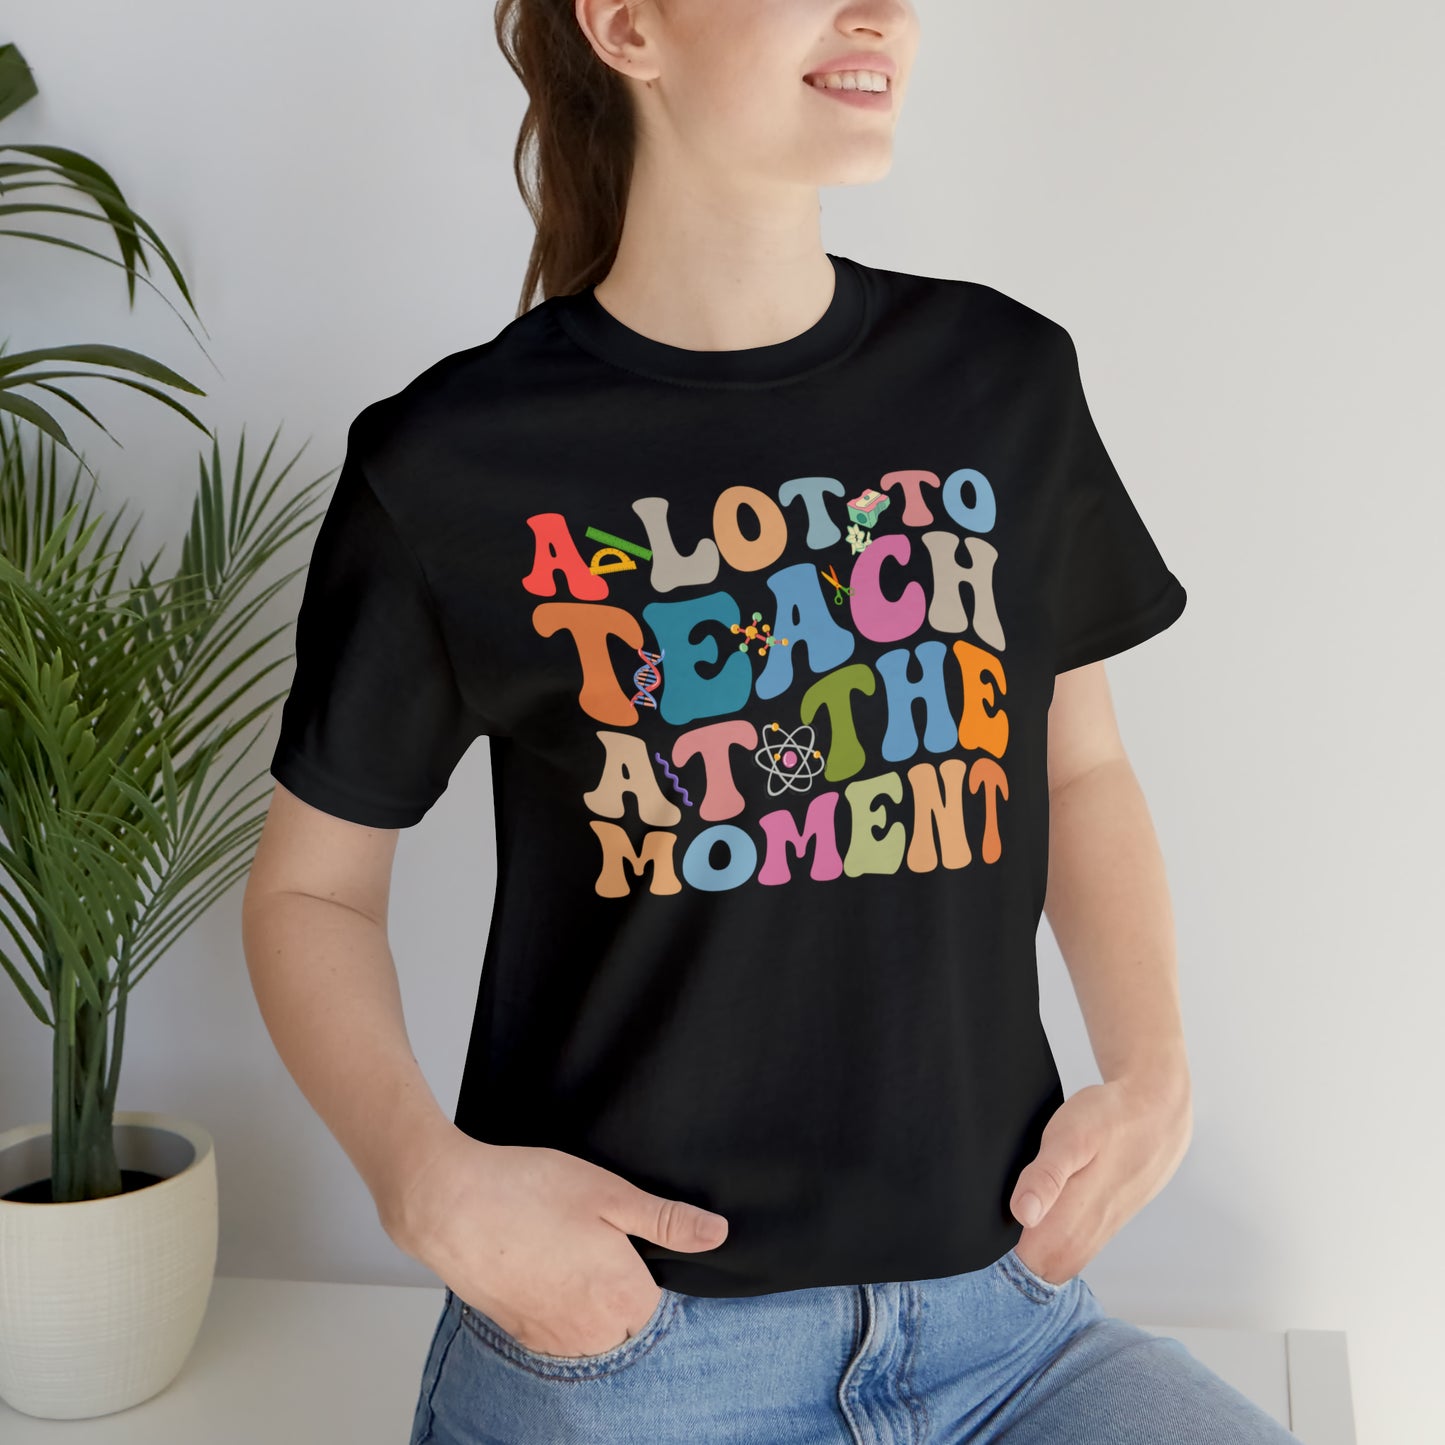 Motivational Shirt, A Lot To Teach At The Moment Shirt, Teacher Shirt, Teacher Appreciation, Back To School Shirt, T498